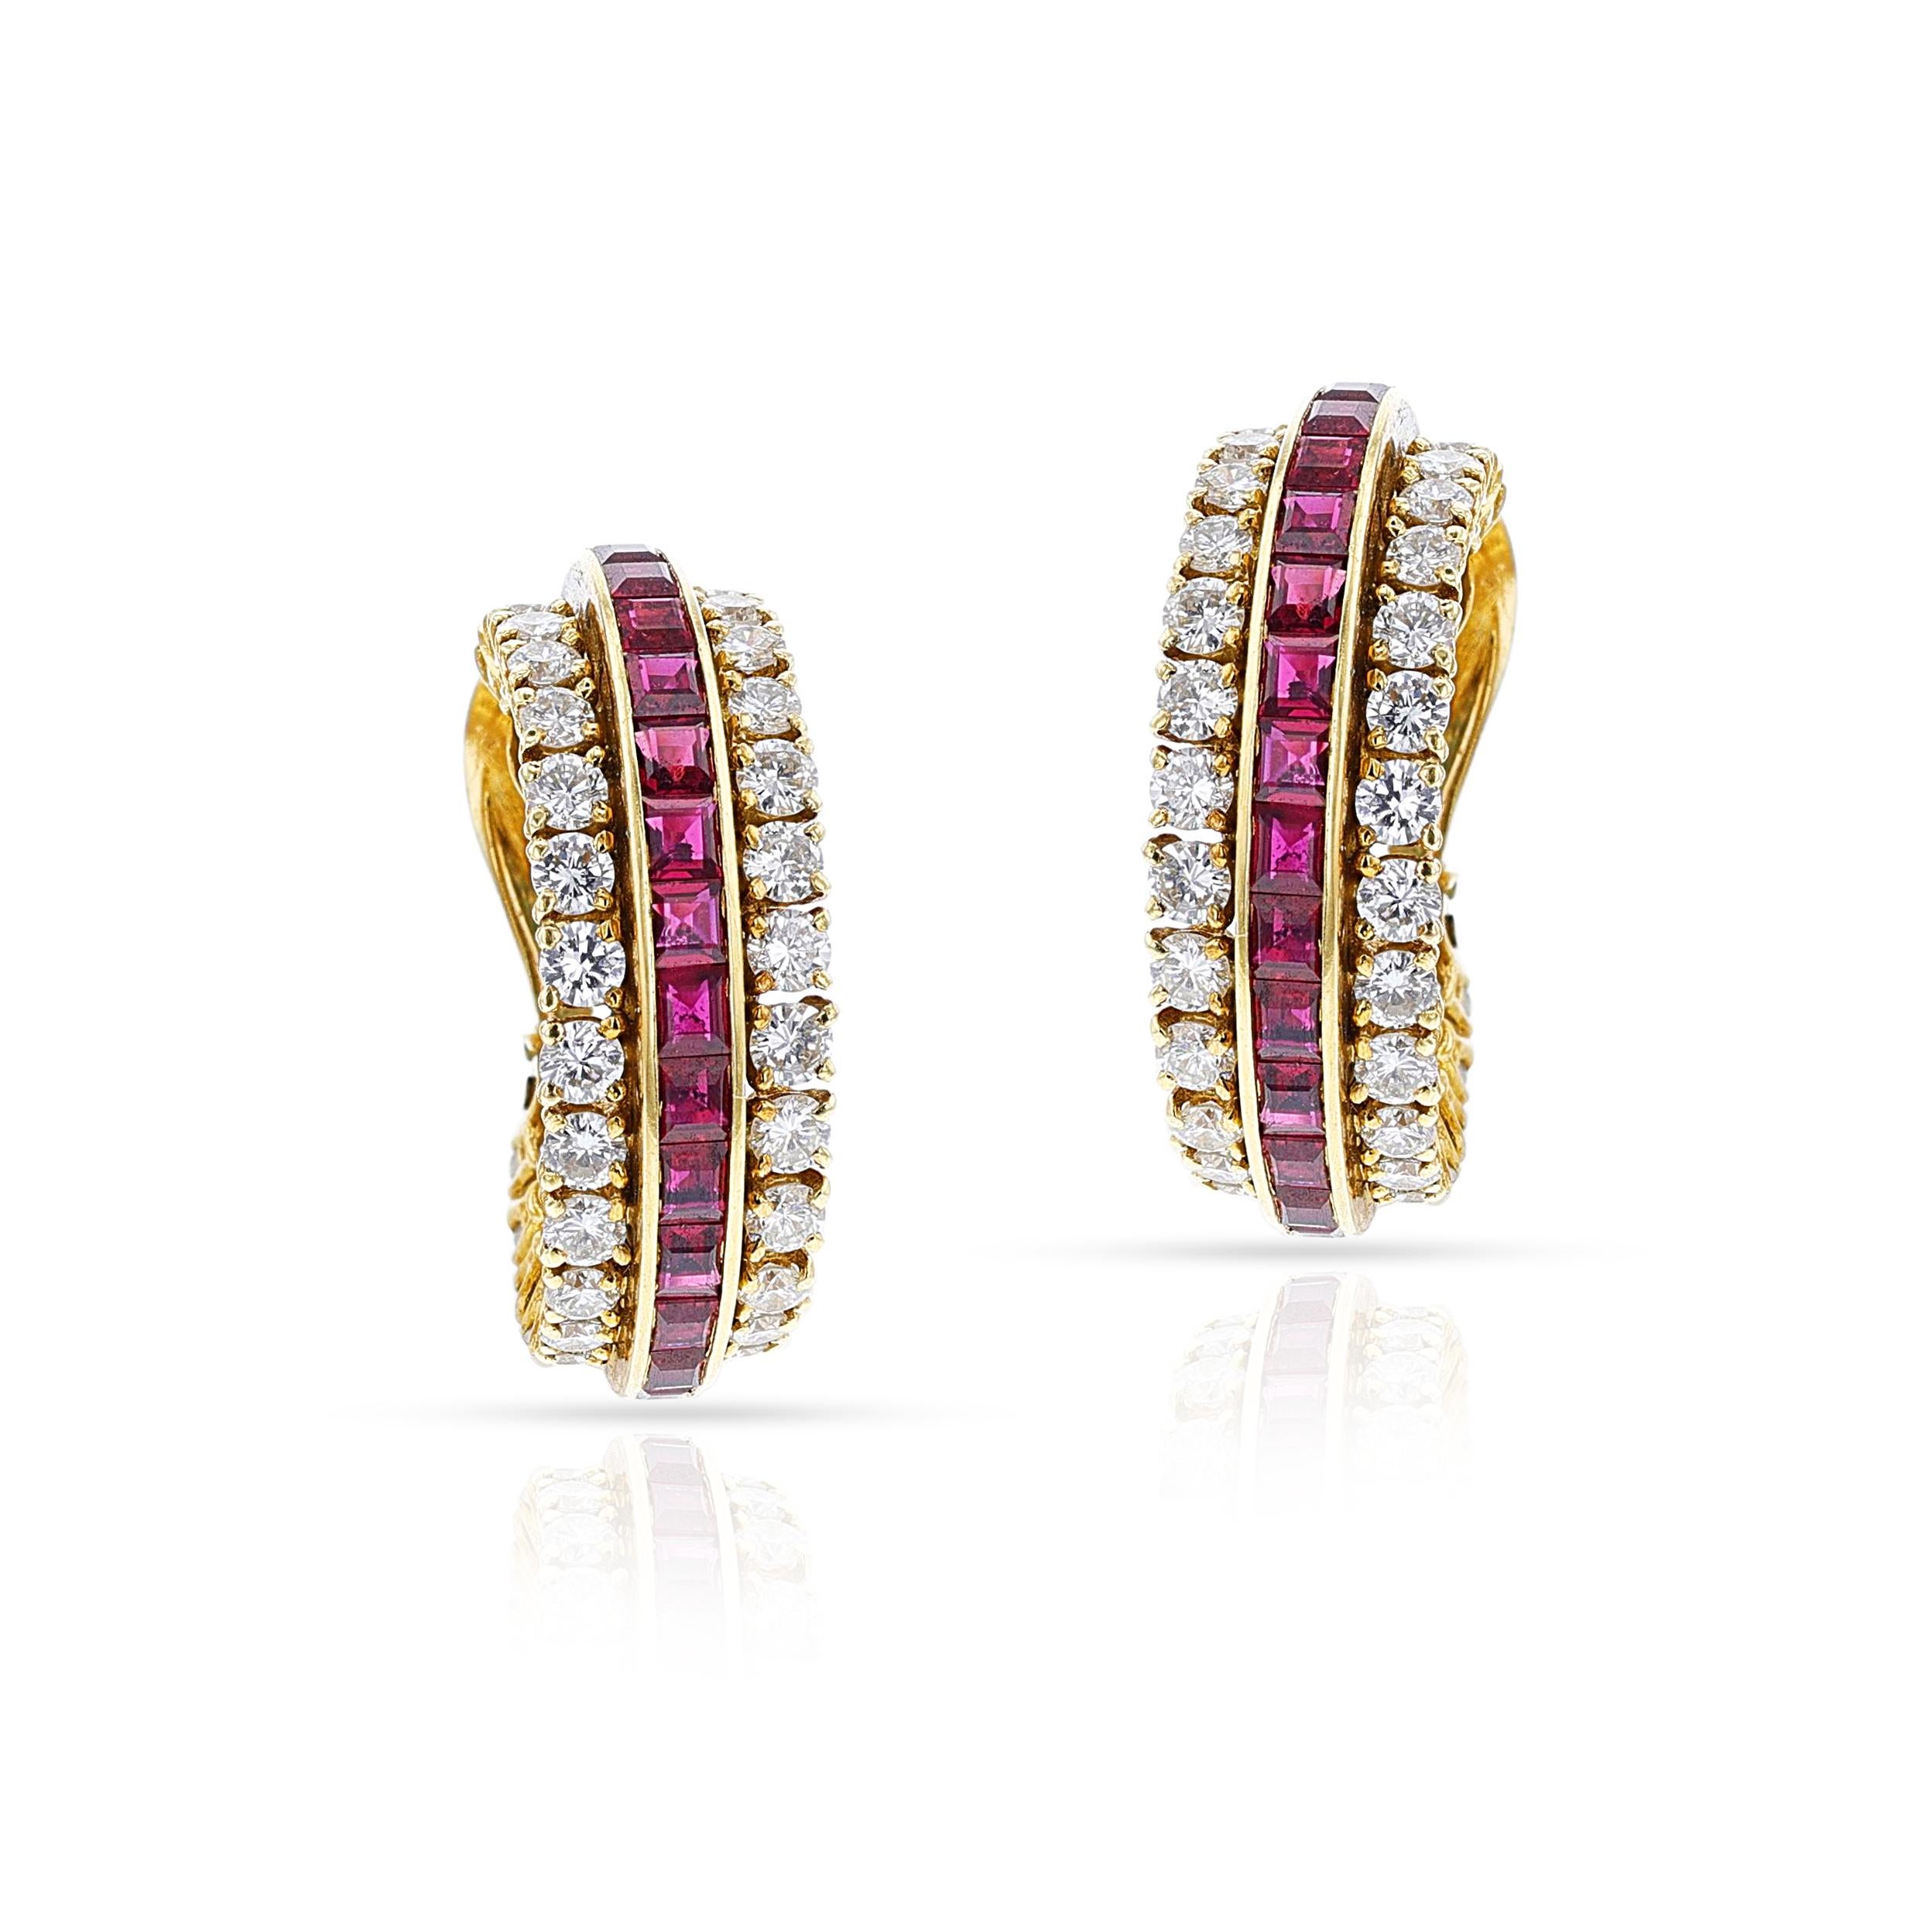 Ein Paar Van Cleef & Arpels Rubin- und Diamant-Halbring-Ohrringe aus 18 Karat Gold. Die Ohrringe sind mit Rubinen im Kalibré-Schliff besetzt, die von runden Diamanten umgeben sind. Die Länge beträgt 1 Zoll. Die Diamanten wiegen ca. 2,75 Karat und